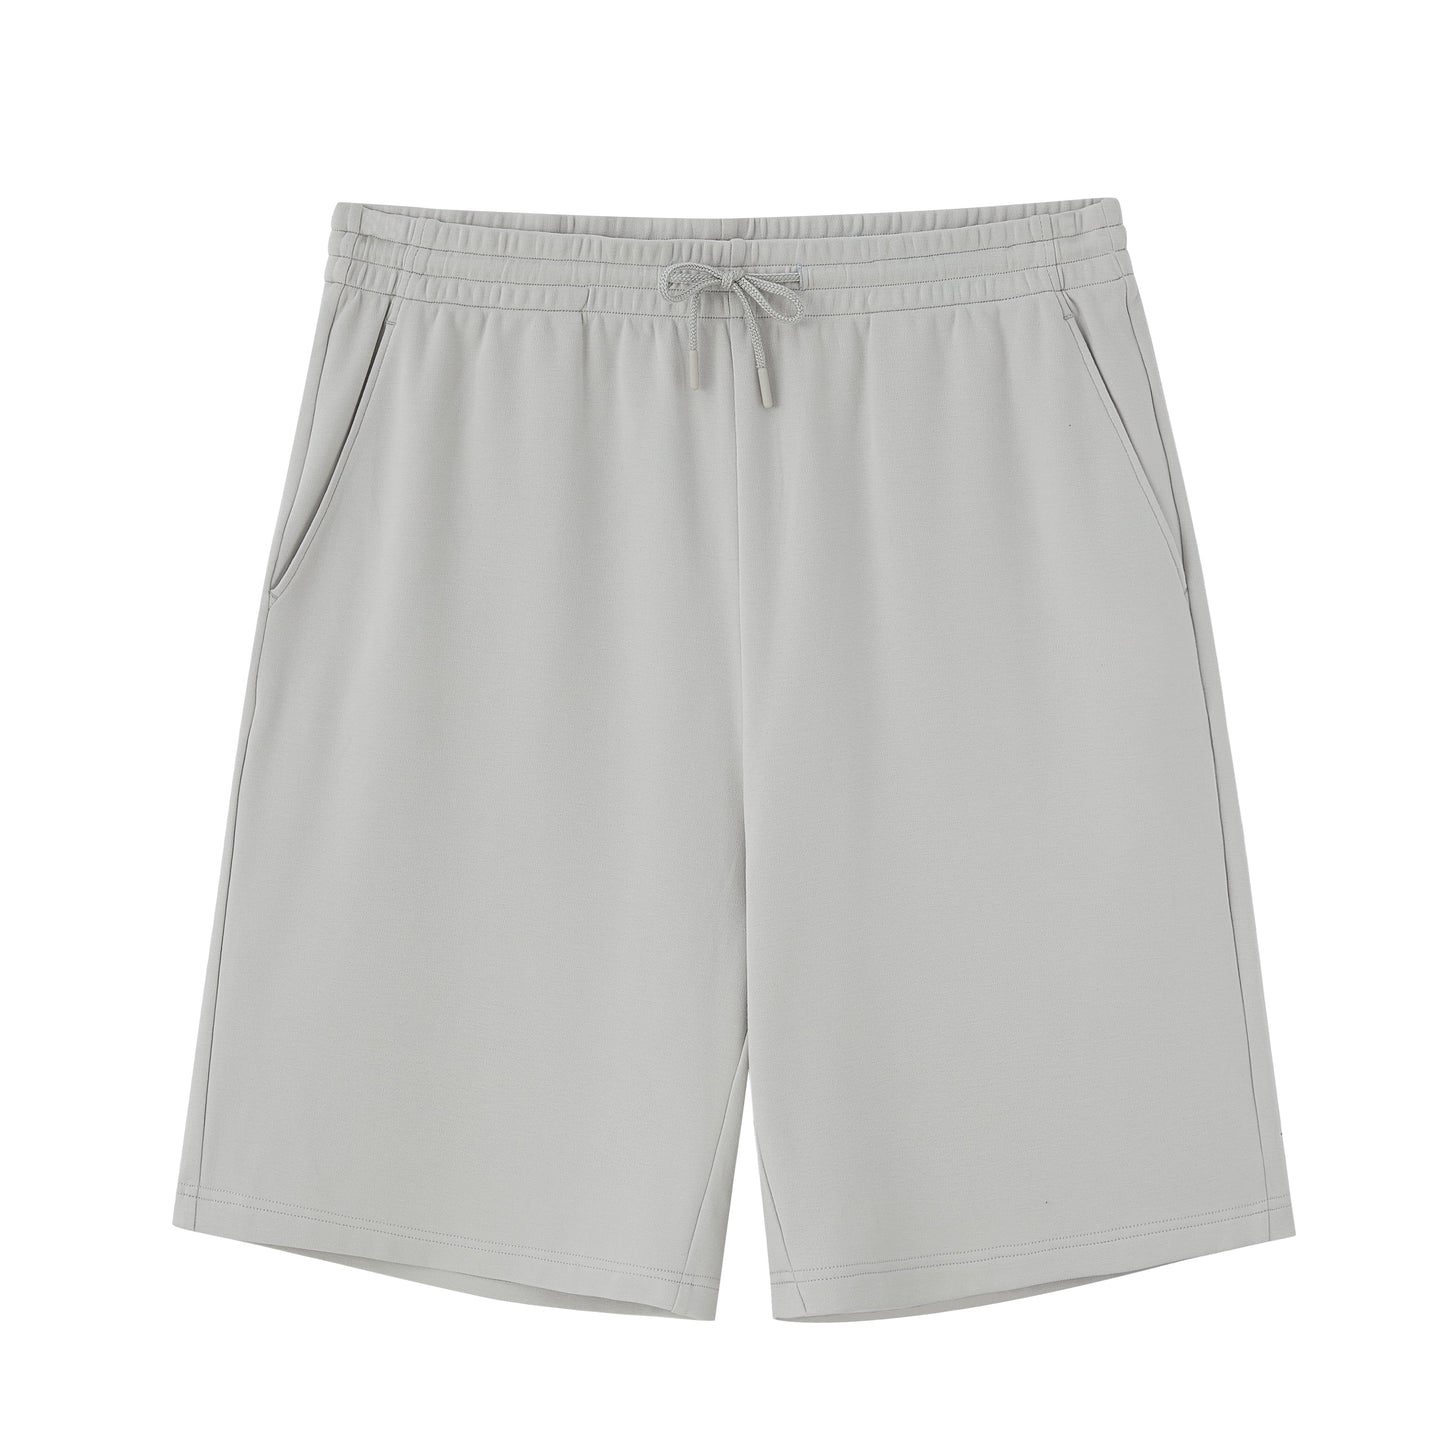 flat lay image of grey shorts